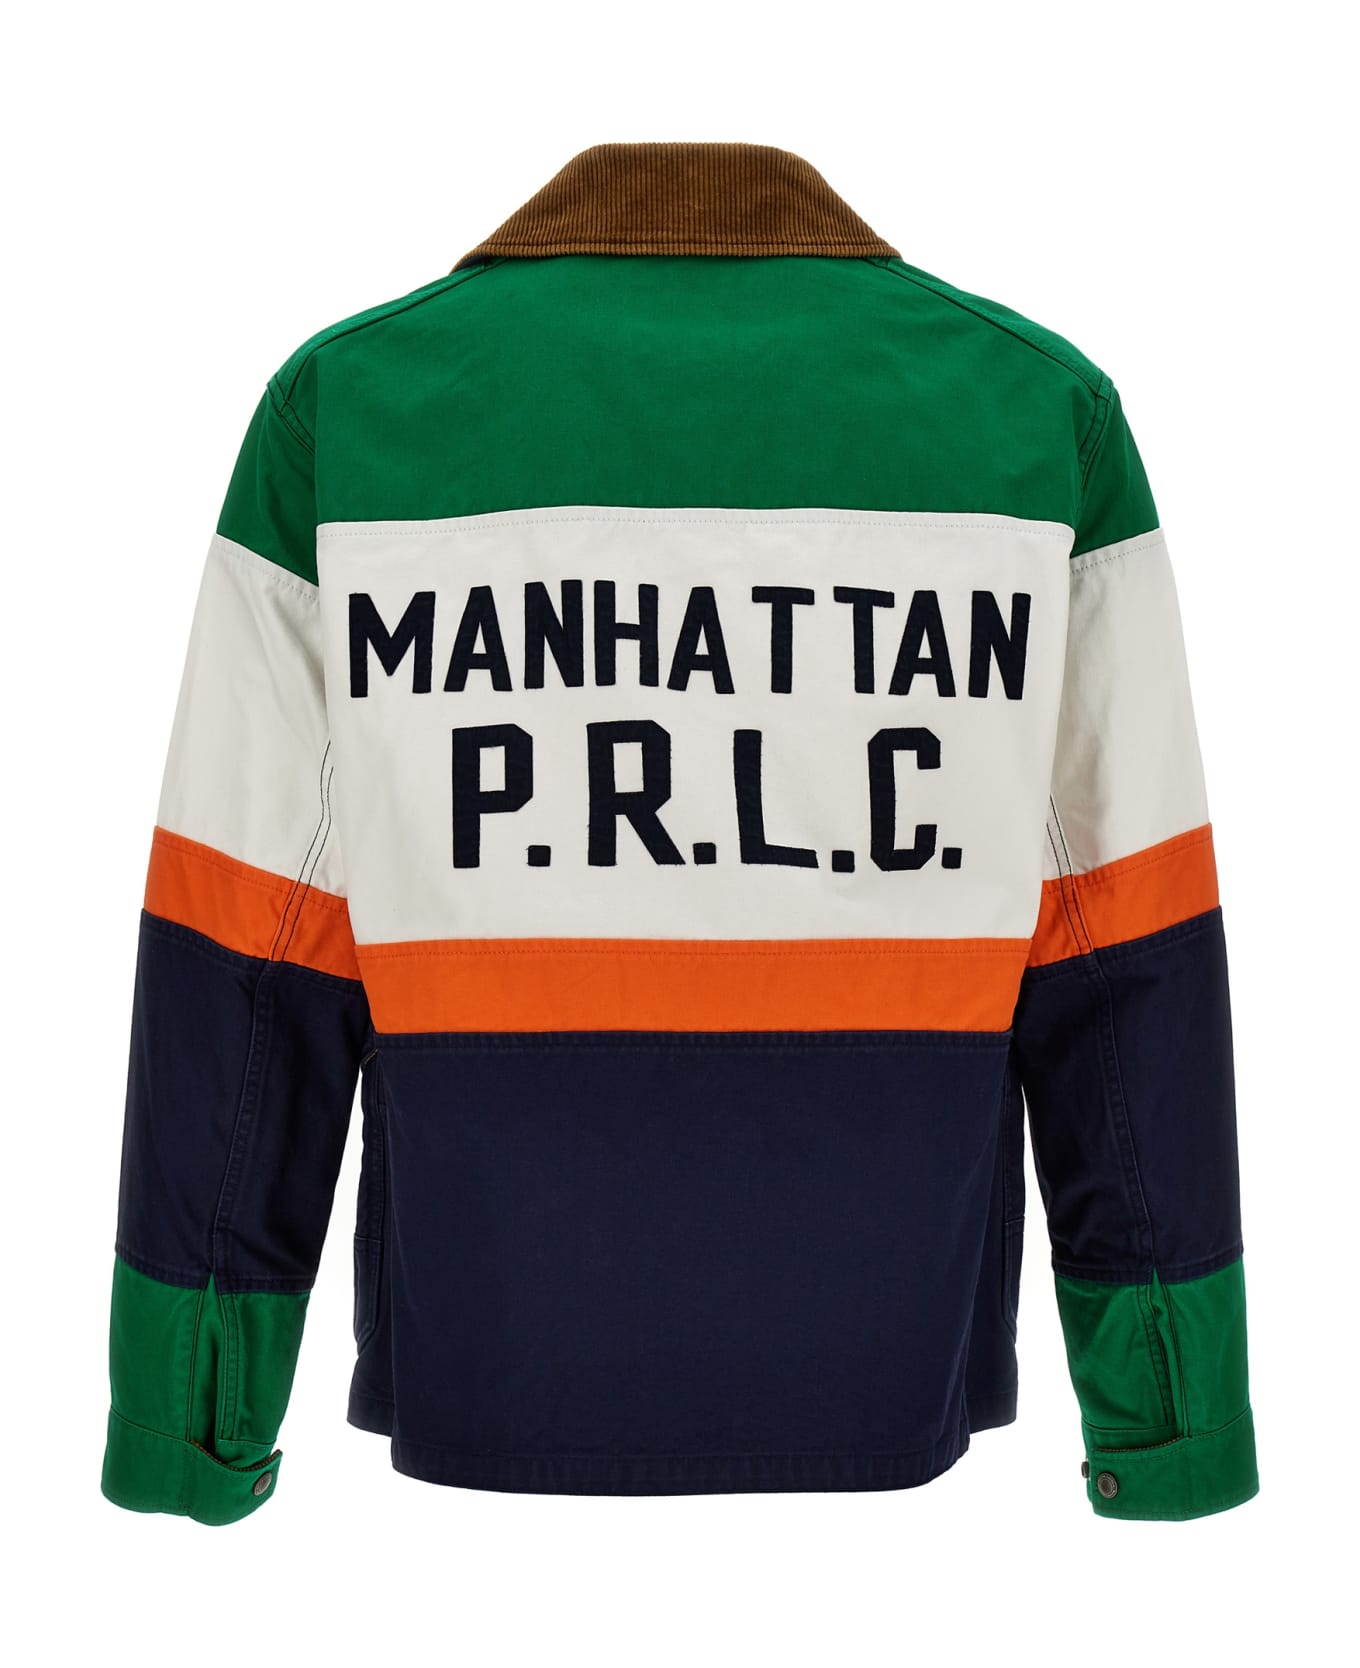 Polo Ralph Lauren 'sailor' Jacket - Multicolor